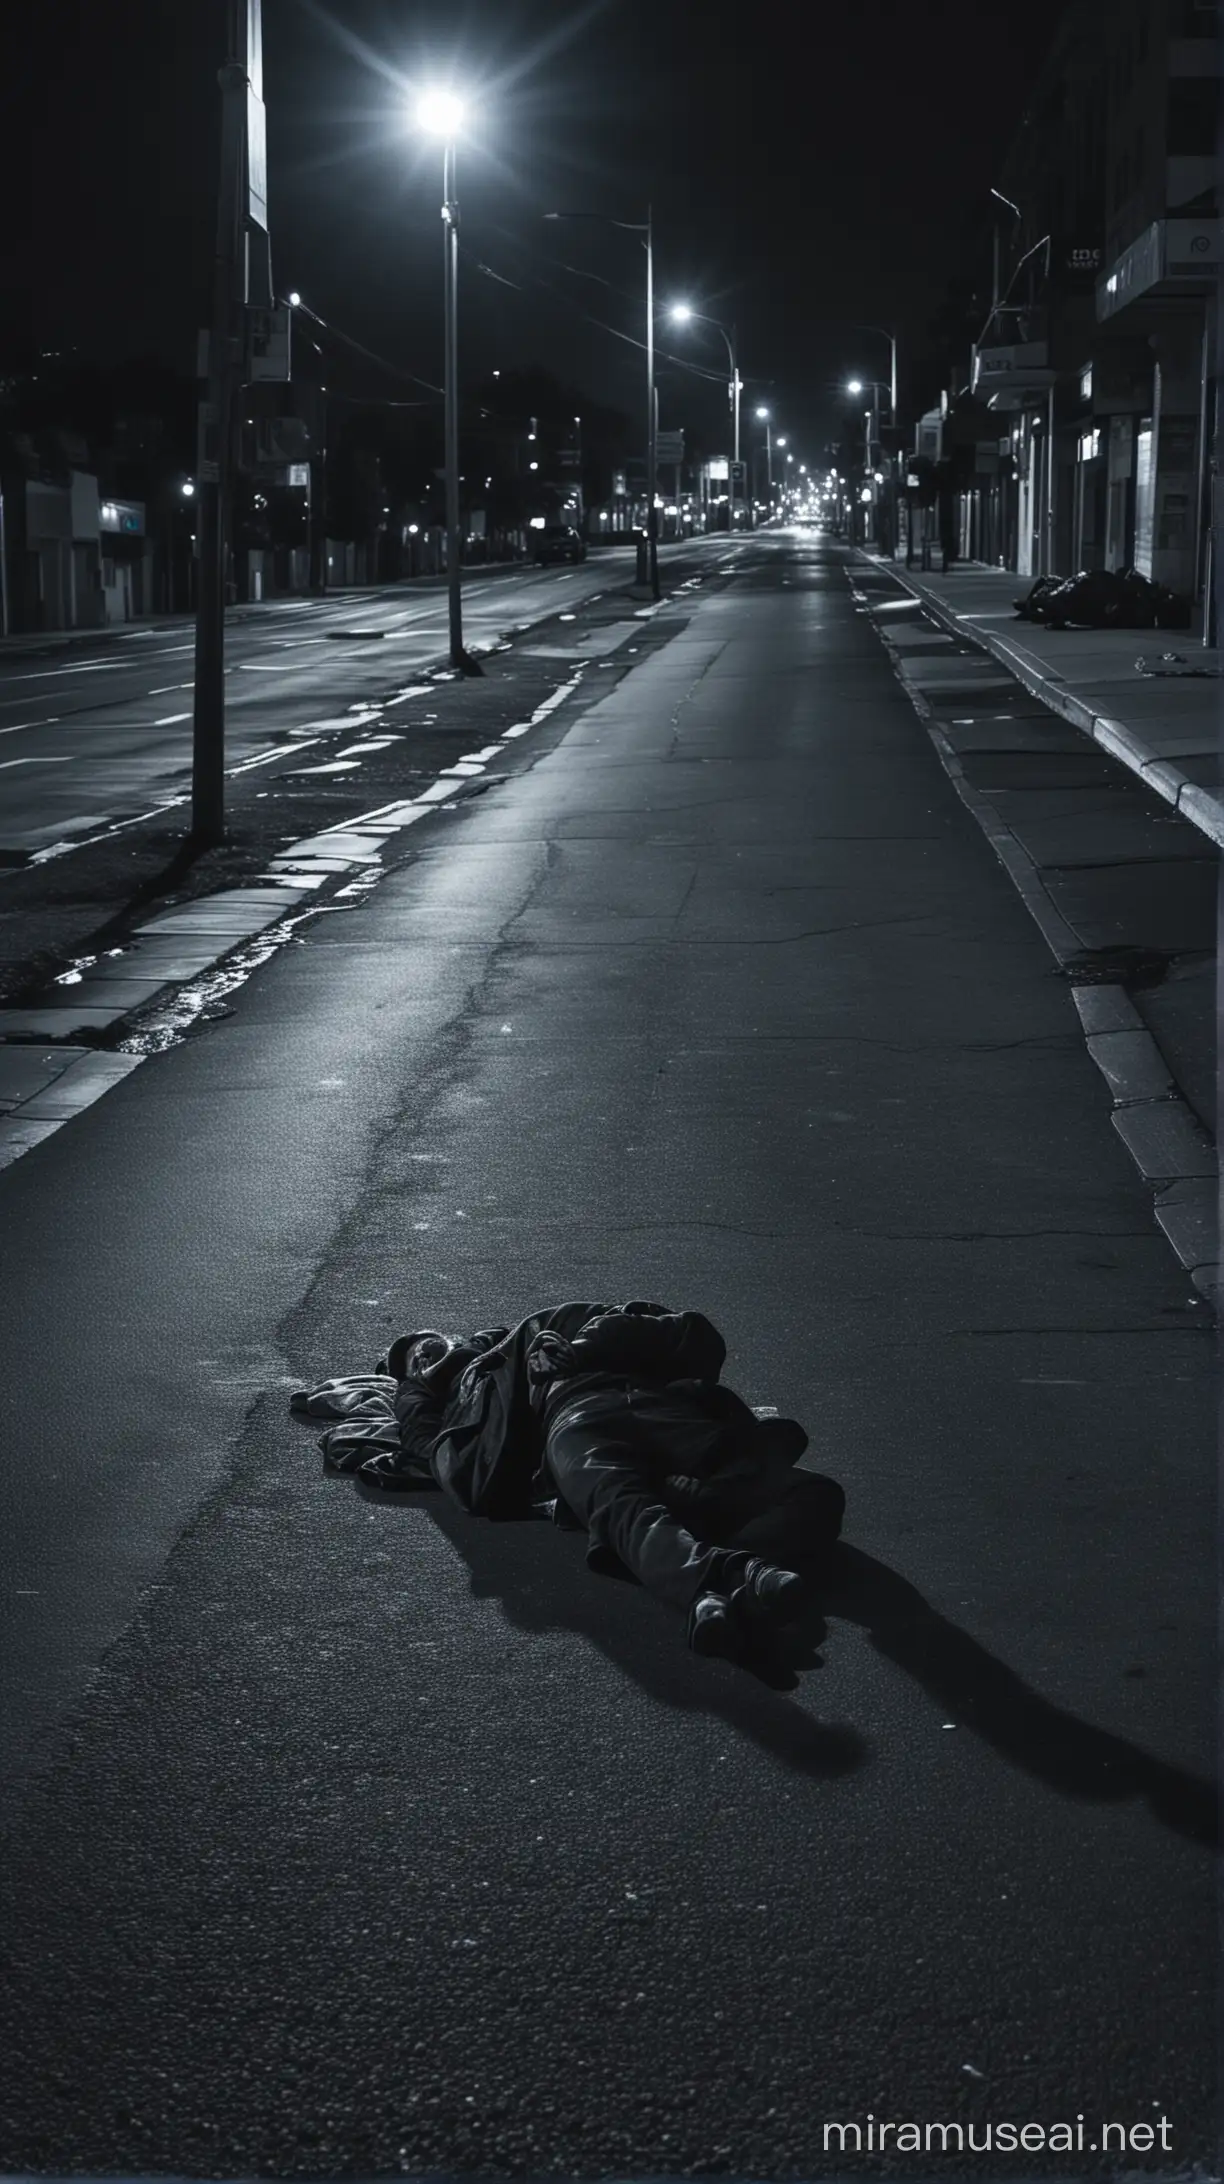 Homeless Man Resting Under a Streetlight at Night